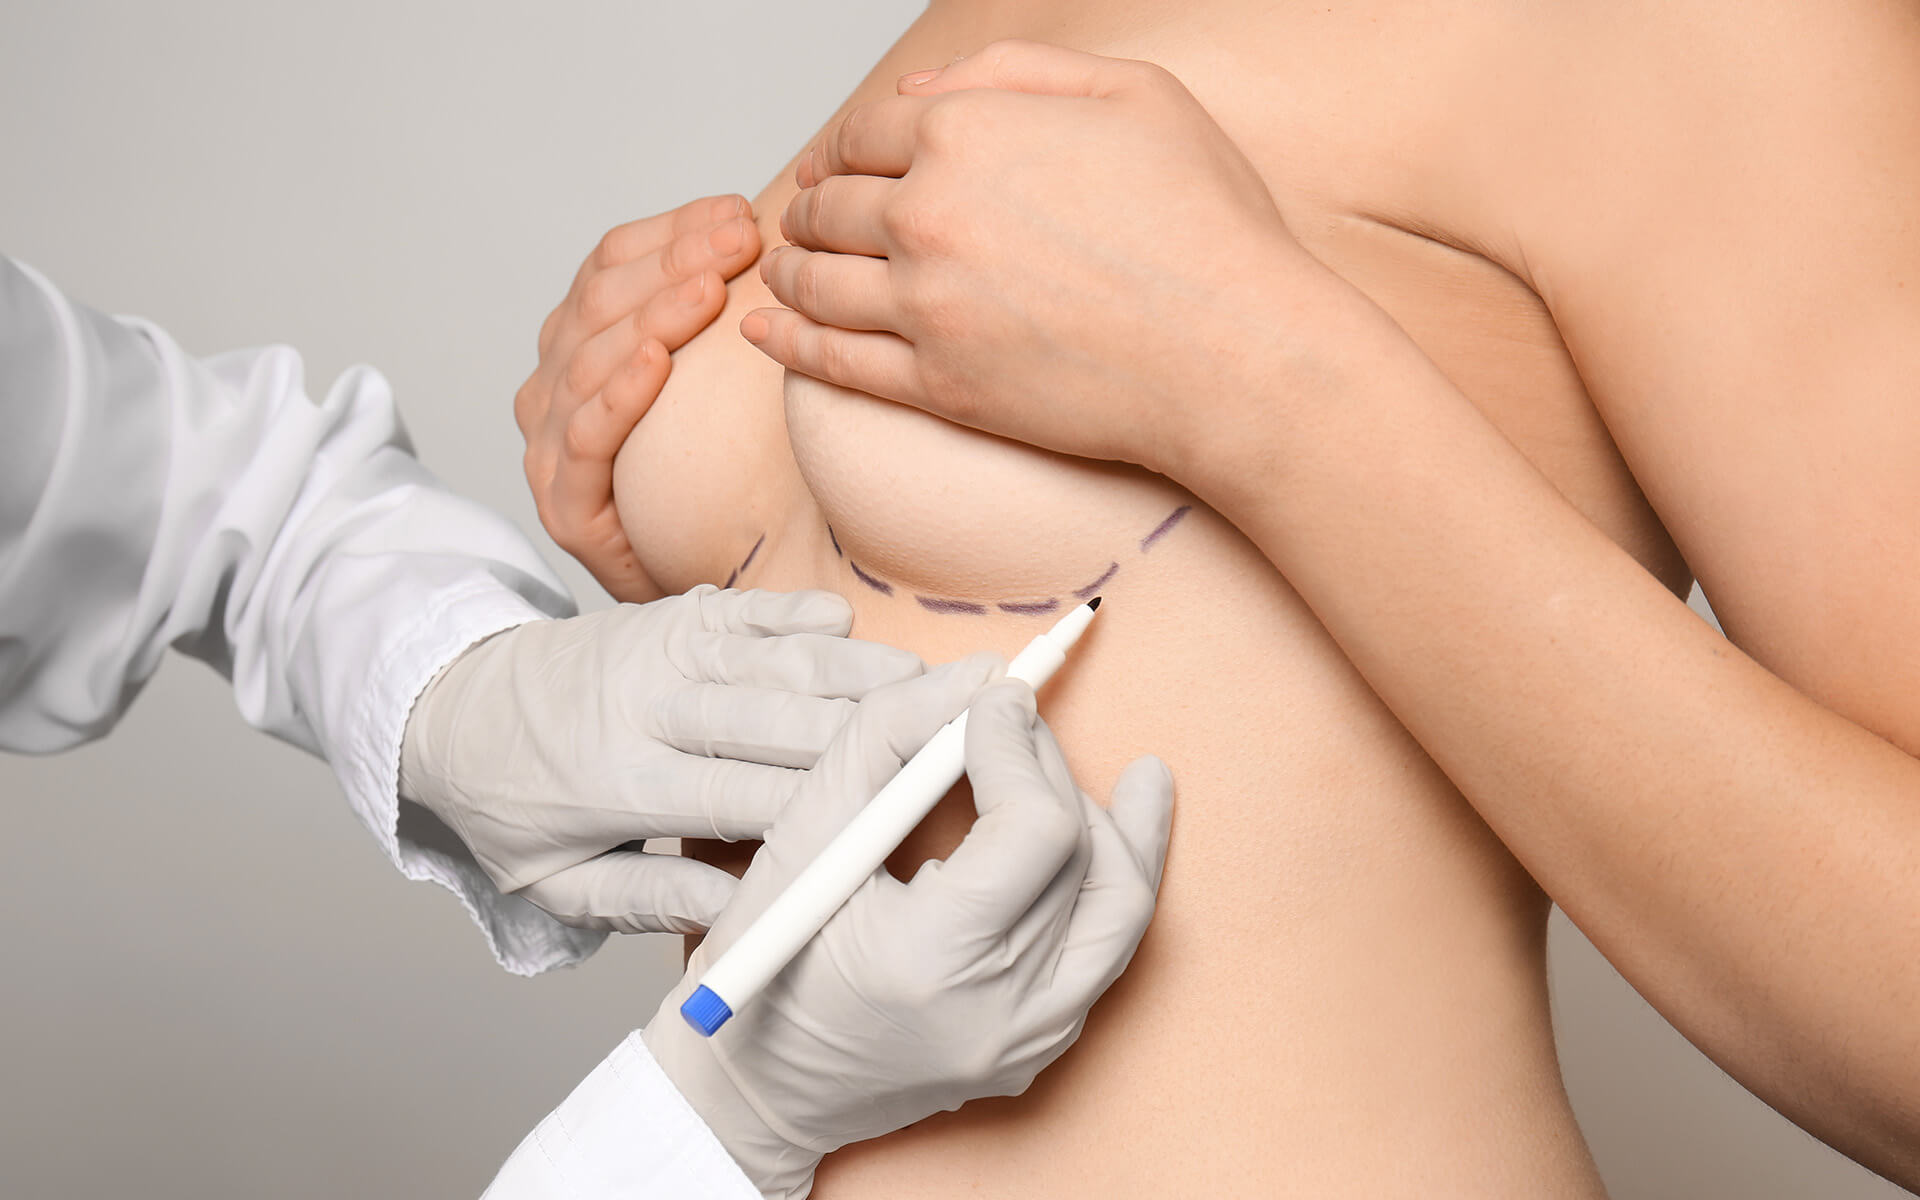 woman receiving markings under breasts